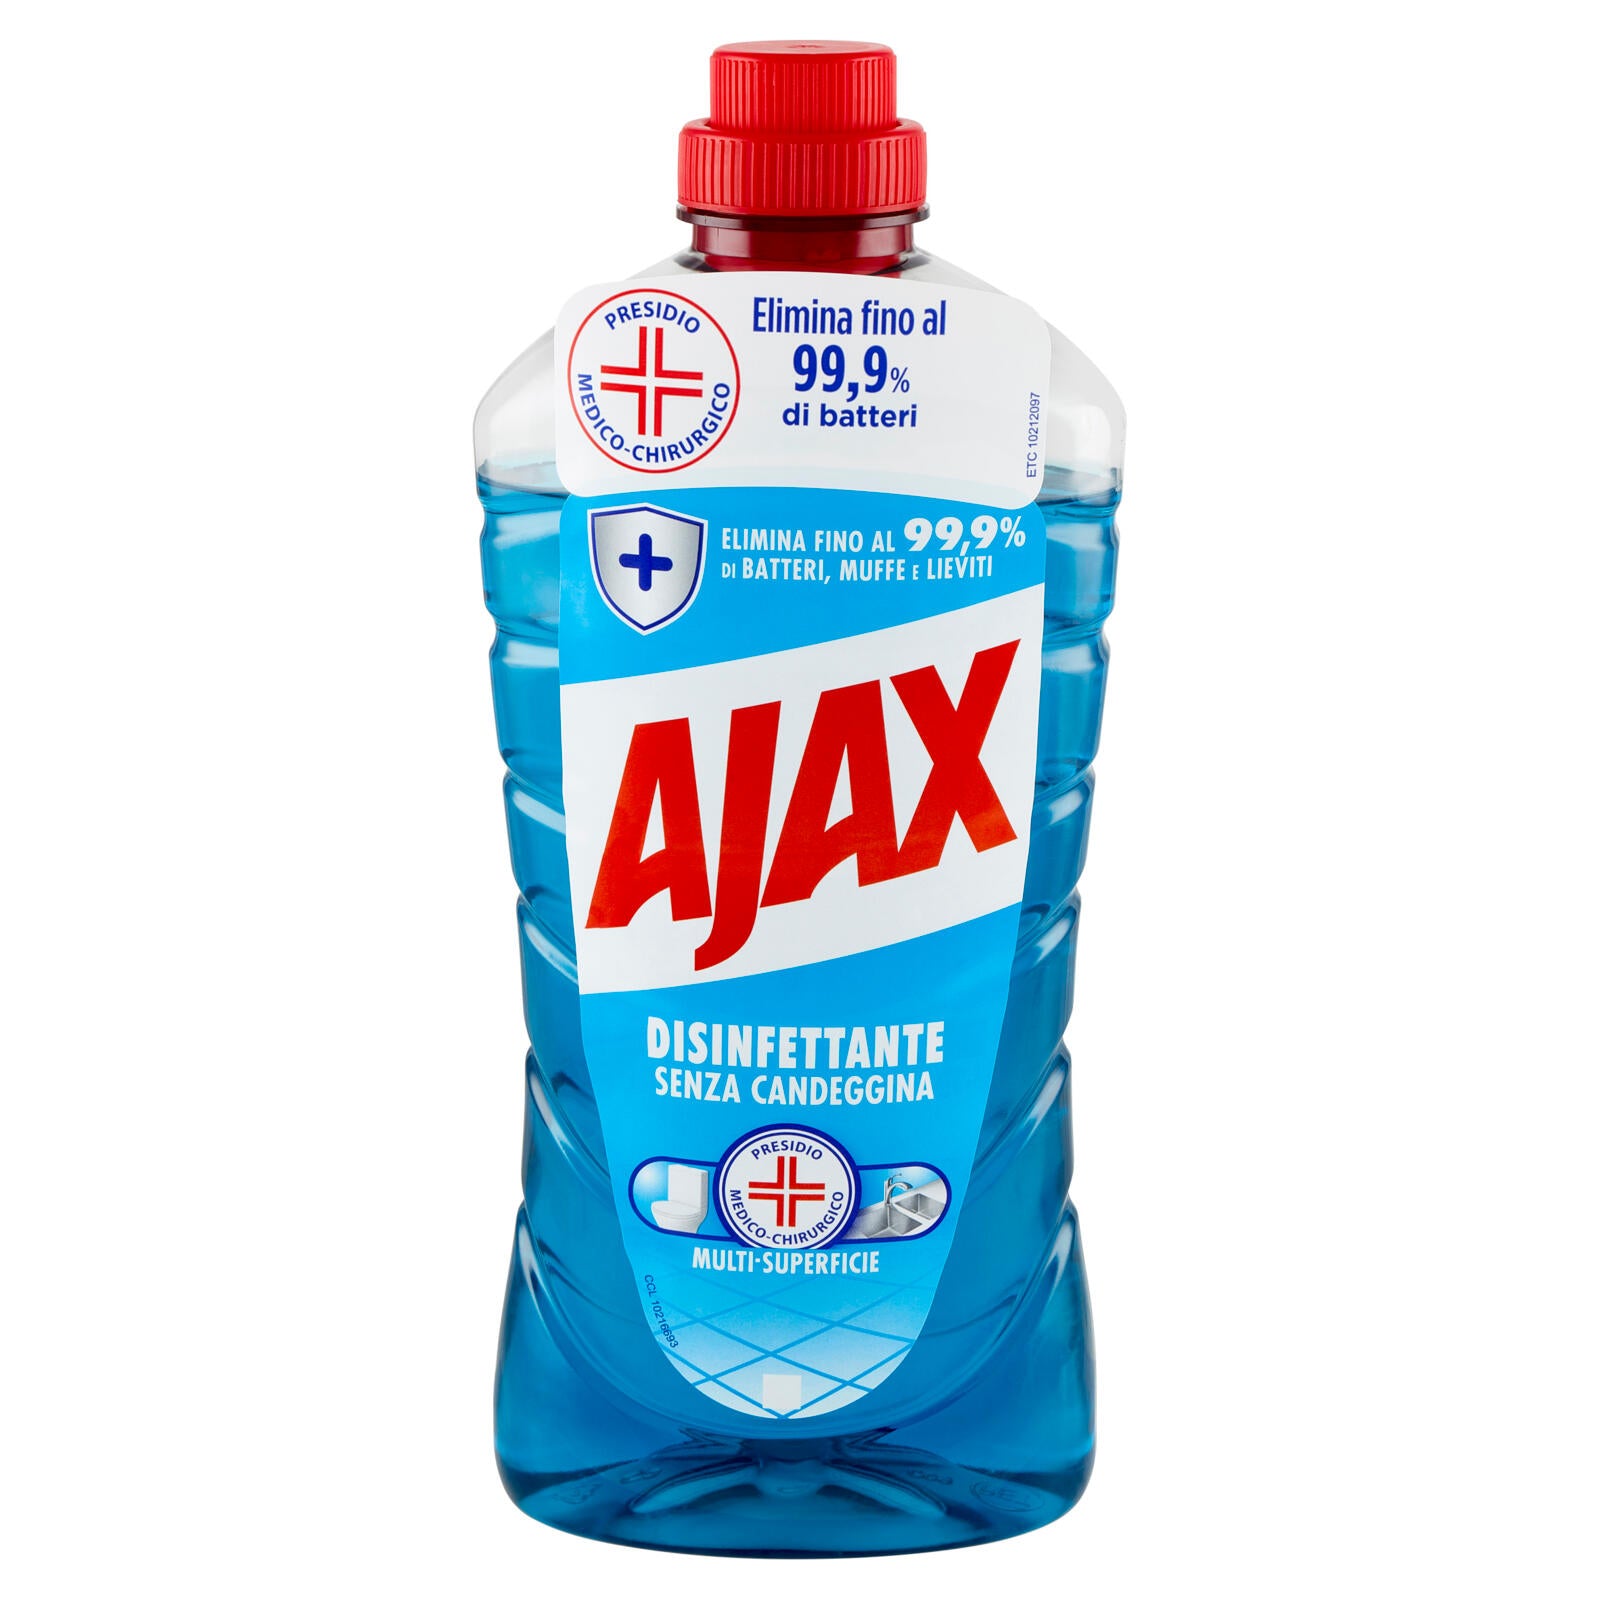 Ajax detersivo pavimenti Disinfettante multisuperficie senza candeggina 950 ml